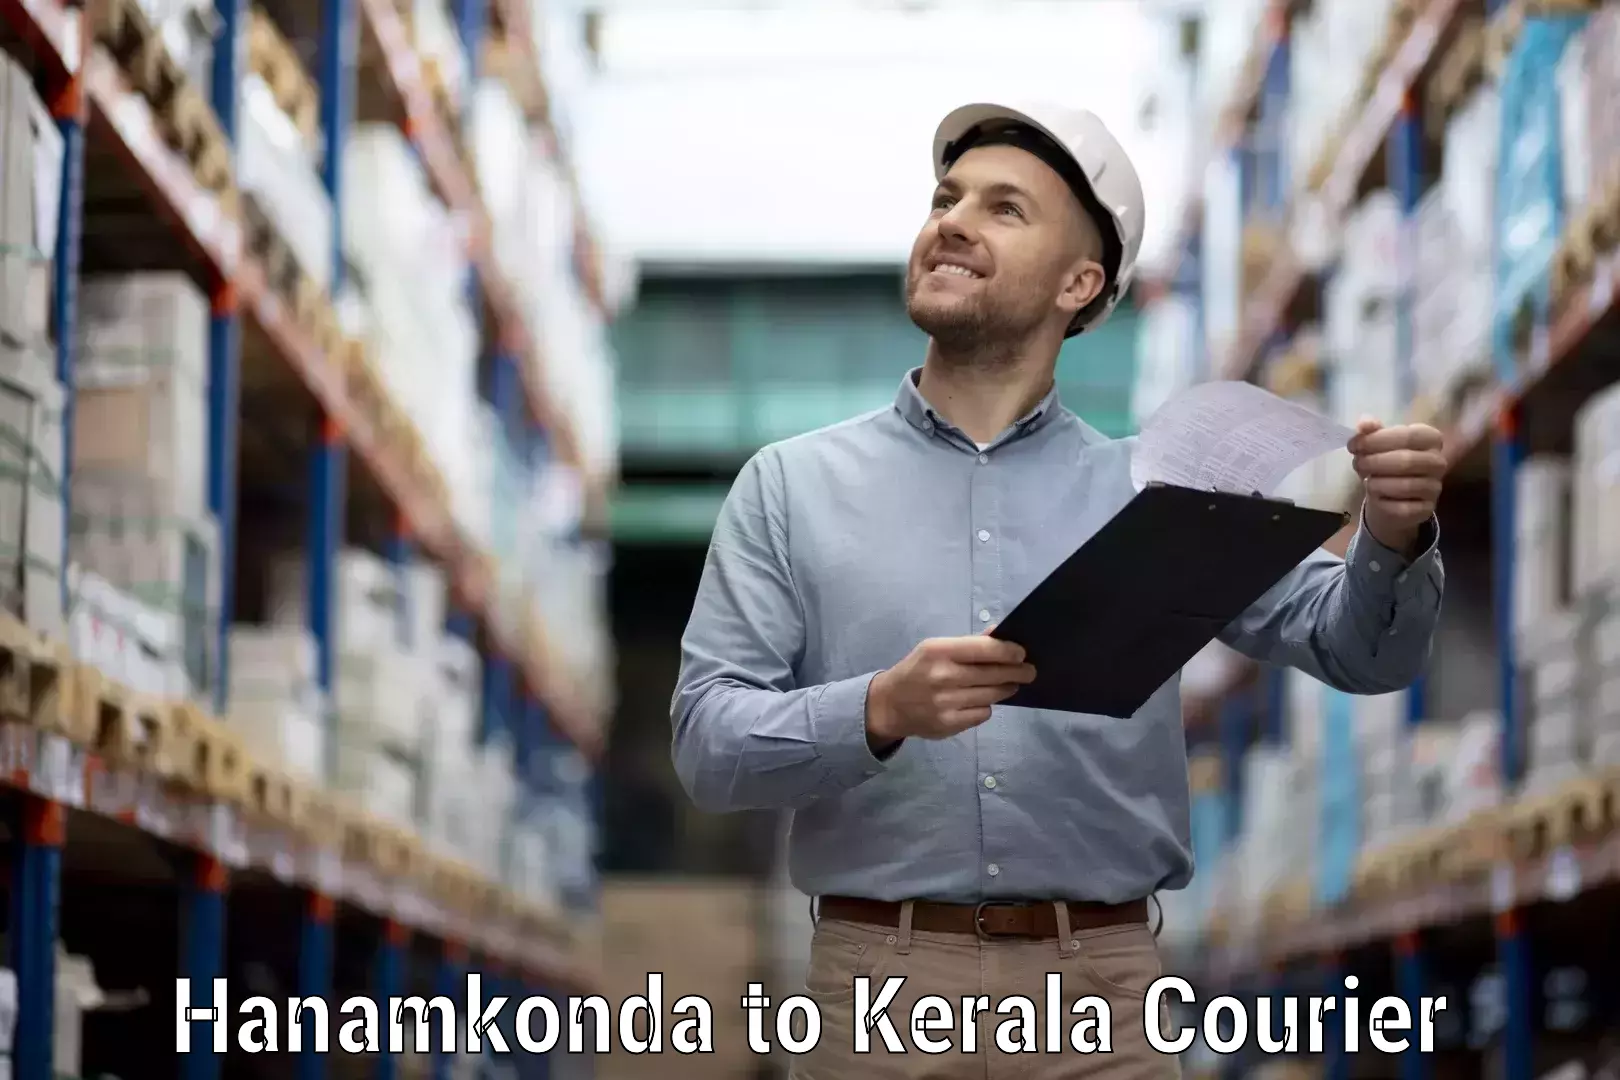 Business shipping needs in Hanamkonda to Kallikkad